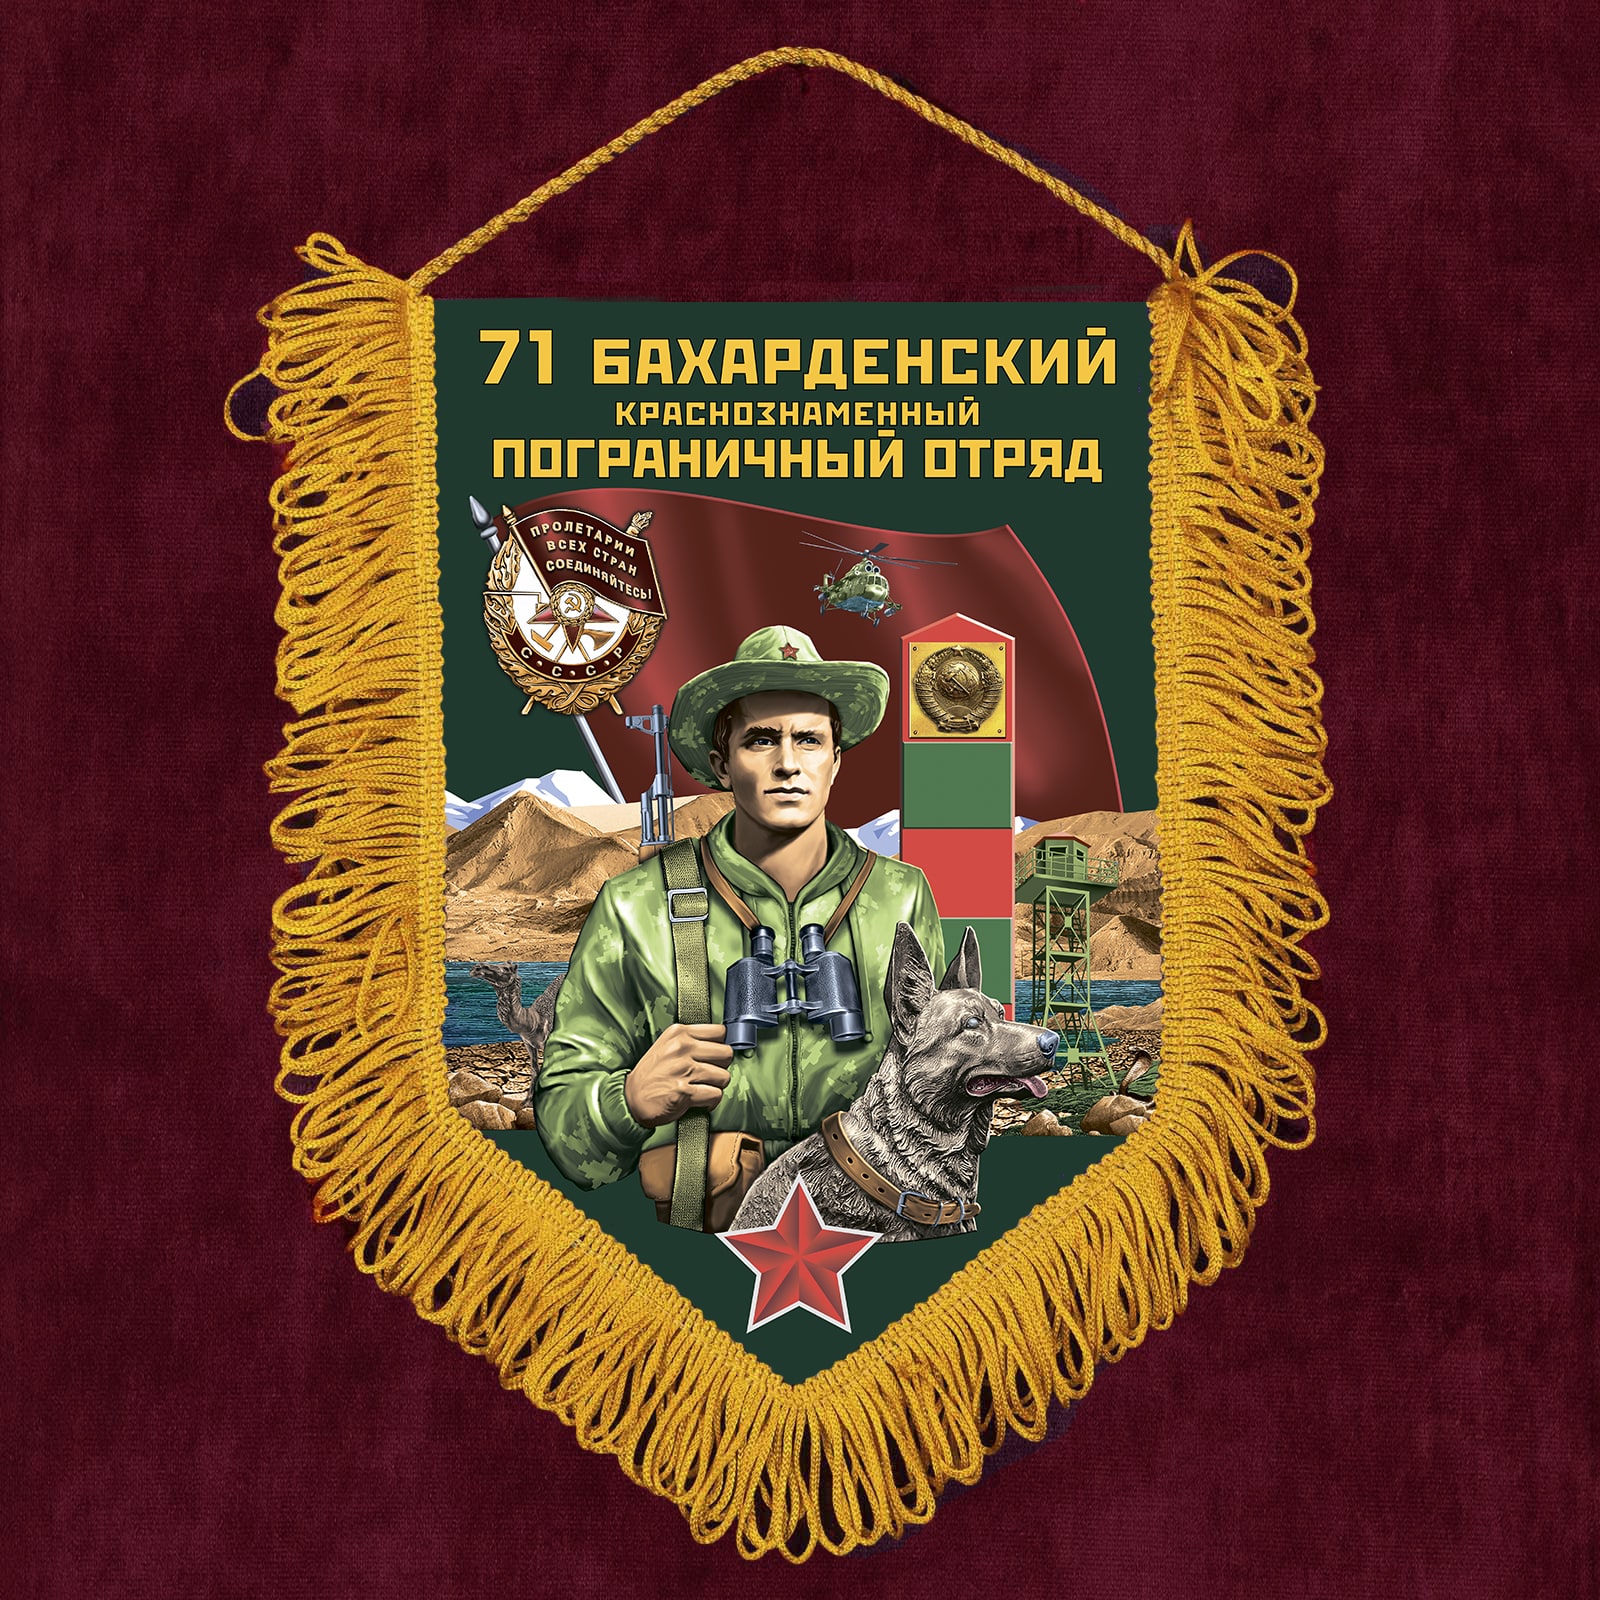 Сувенирный вымпел "71 Бахарденский пограничный отряд"